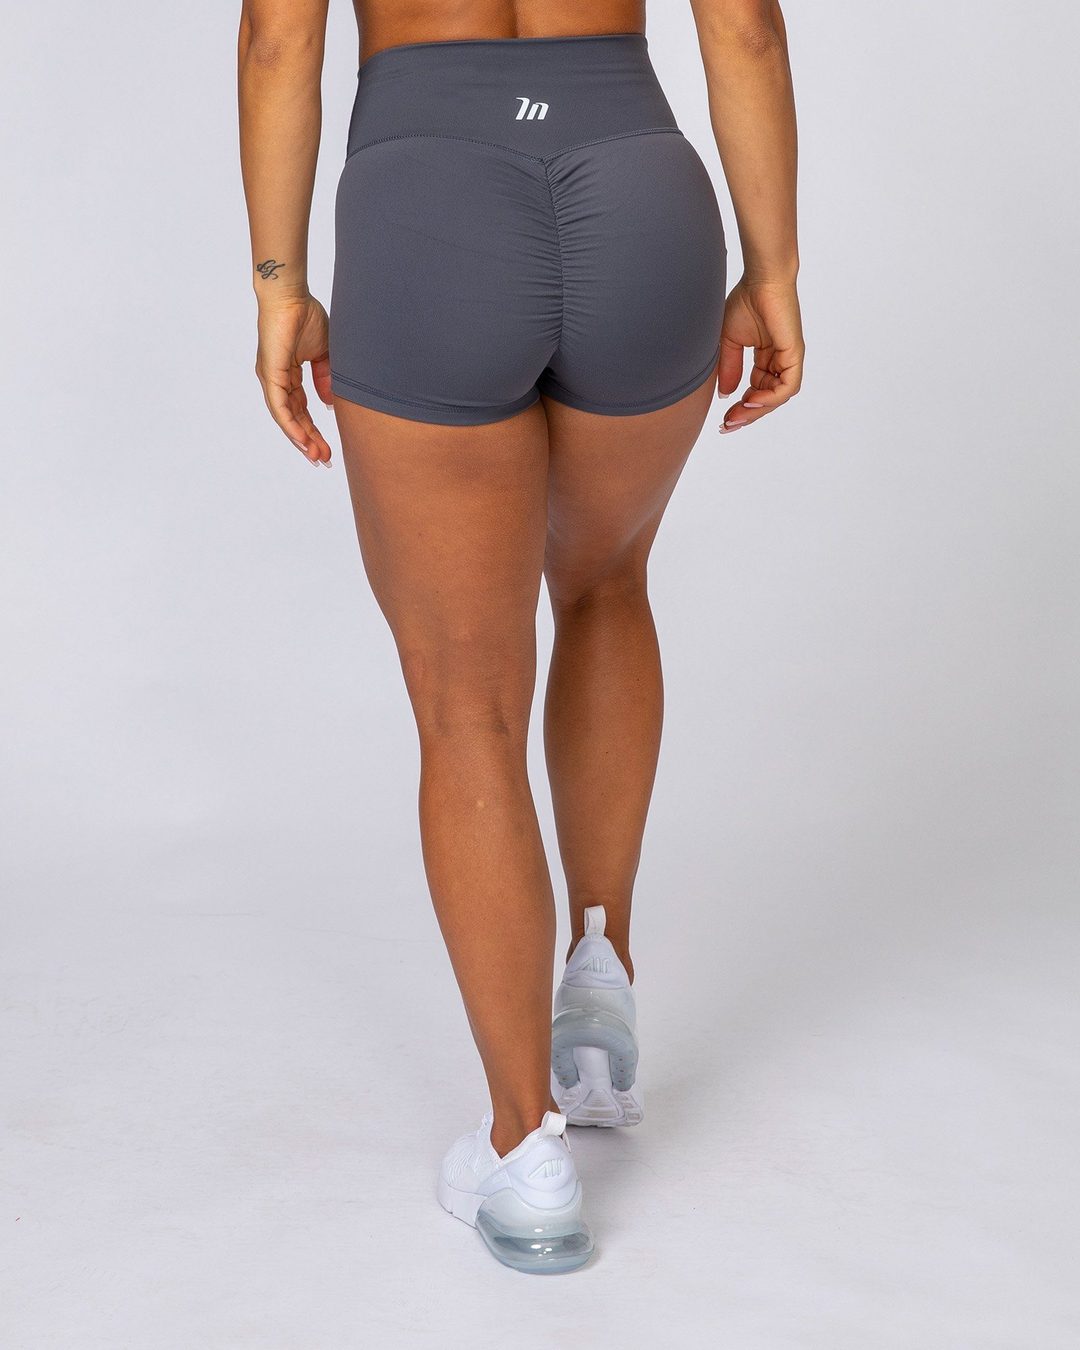 musclenation High Waist Scrunch Shorts - Slate